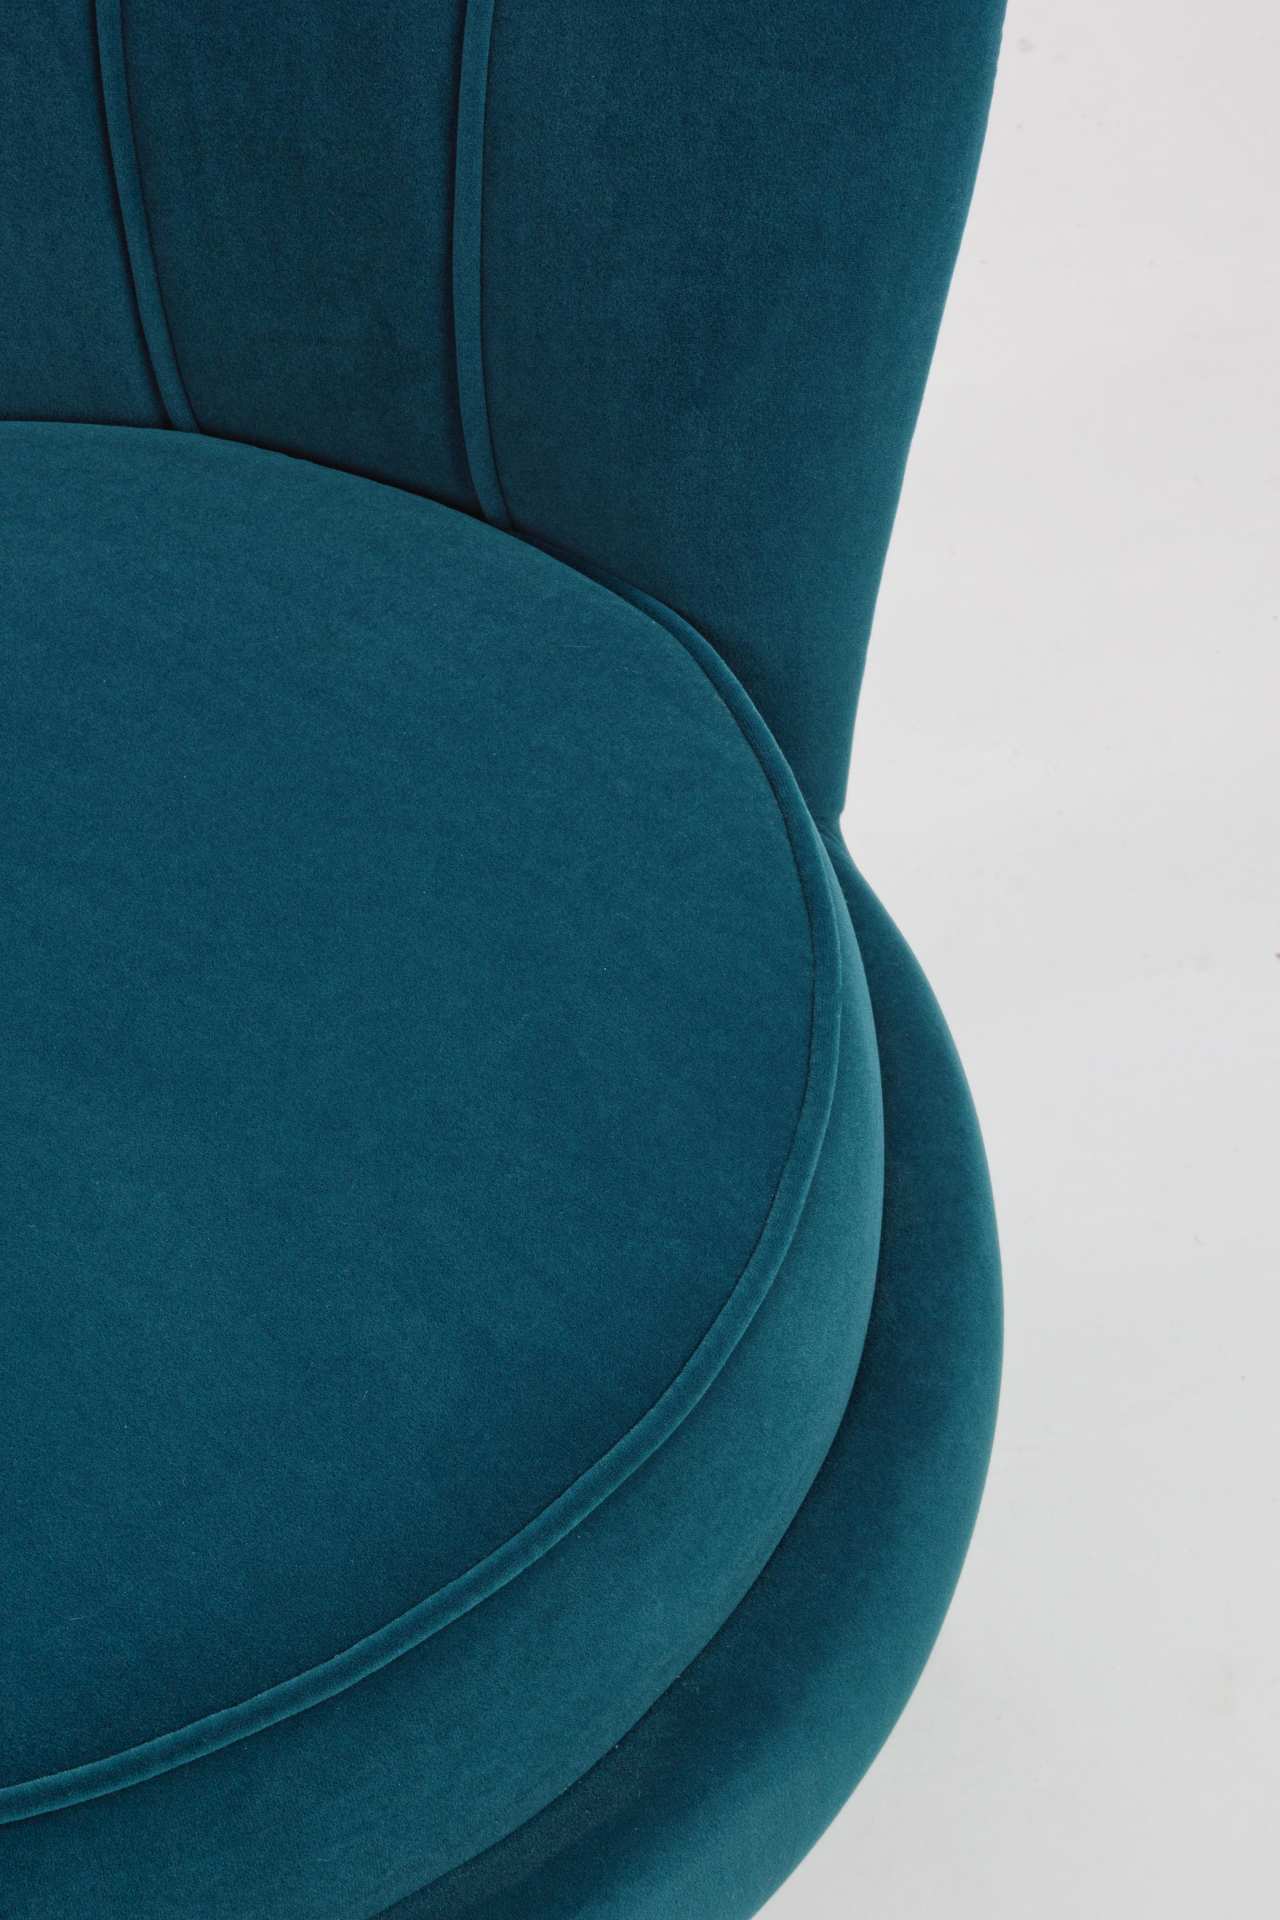 Der Sessel Giliola überzeugt mit seinem modernen Design. Gefertigt wurde er aus Stoff in Samt-Optik, welcher einen blauen Farbton besitzt. Das Gestell ist aus Metall und hat eine goldene Farbe. Der Sessel besitzt eine Sitzhöhe von 45 cm. Die Breite beträg